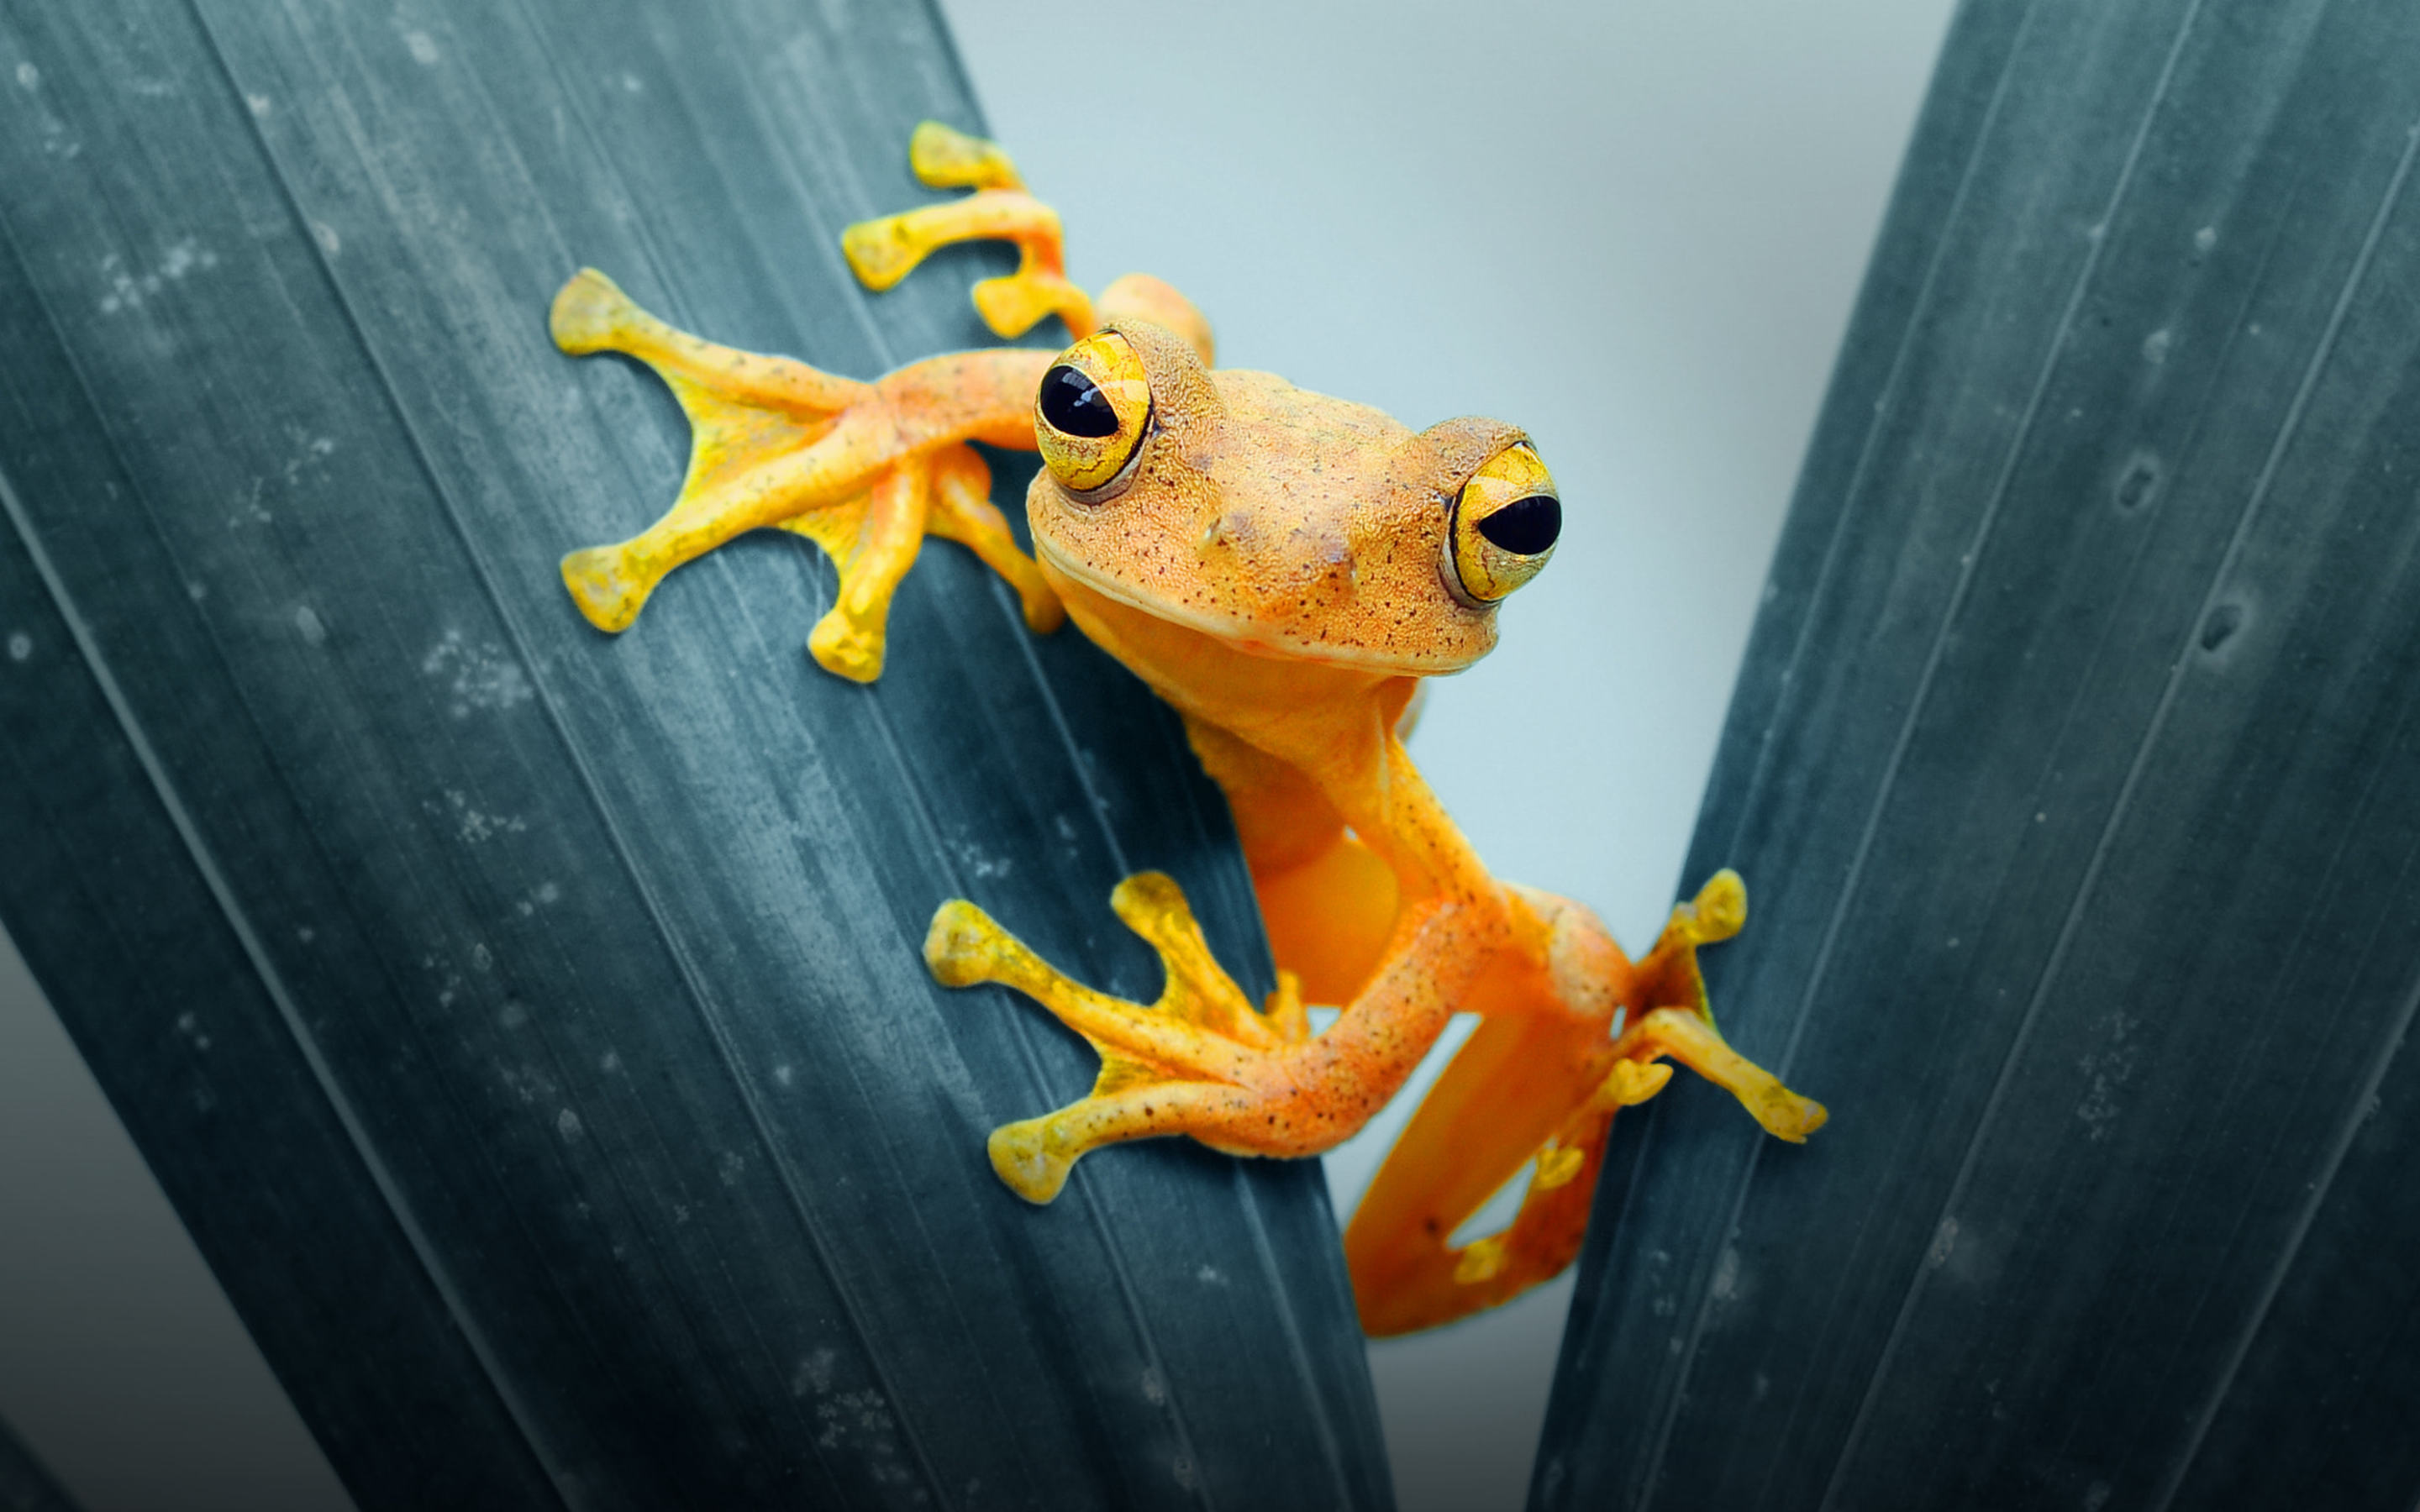 Frog closeup photo